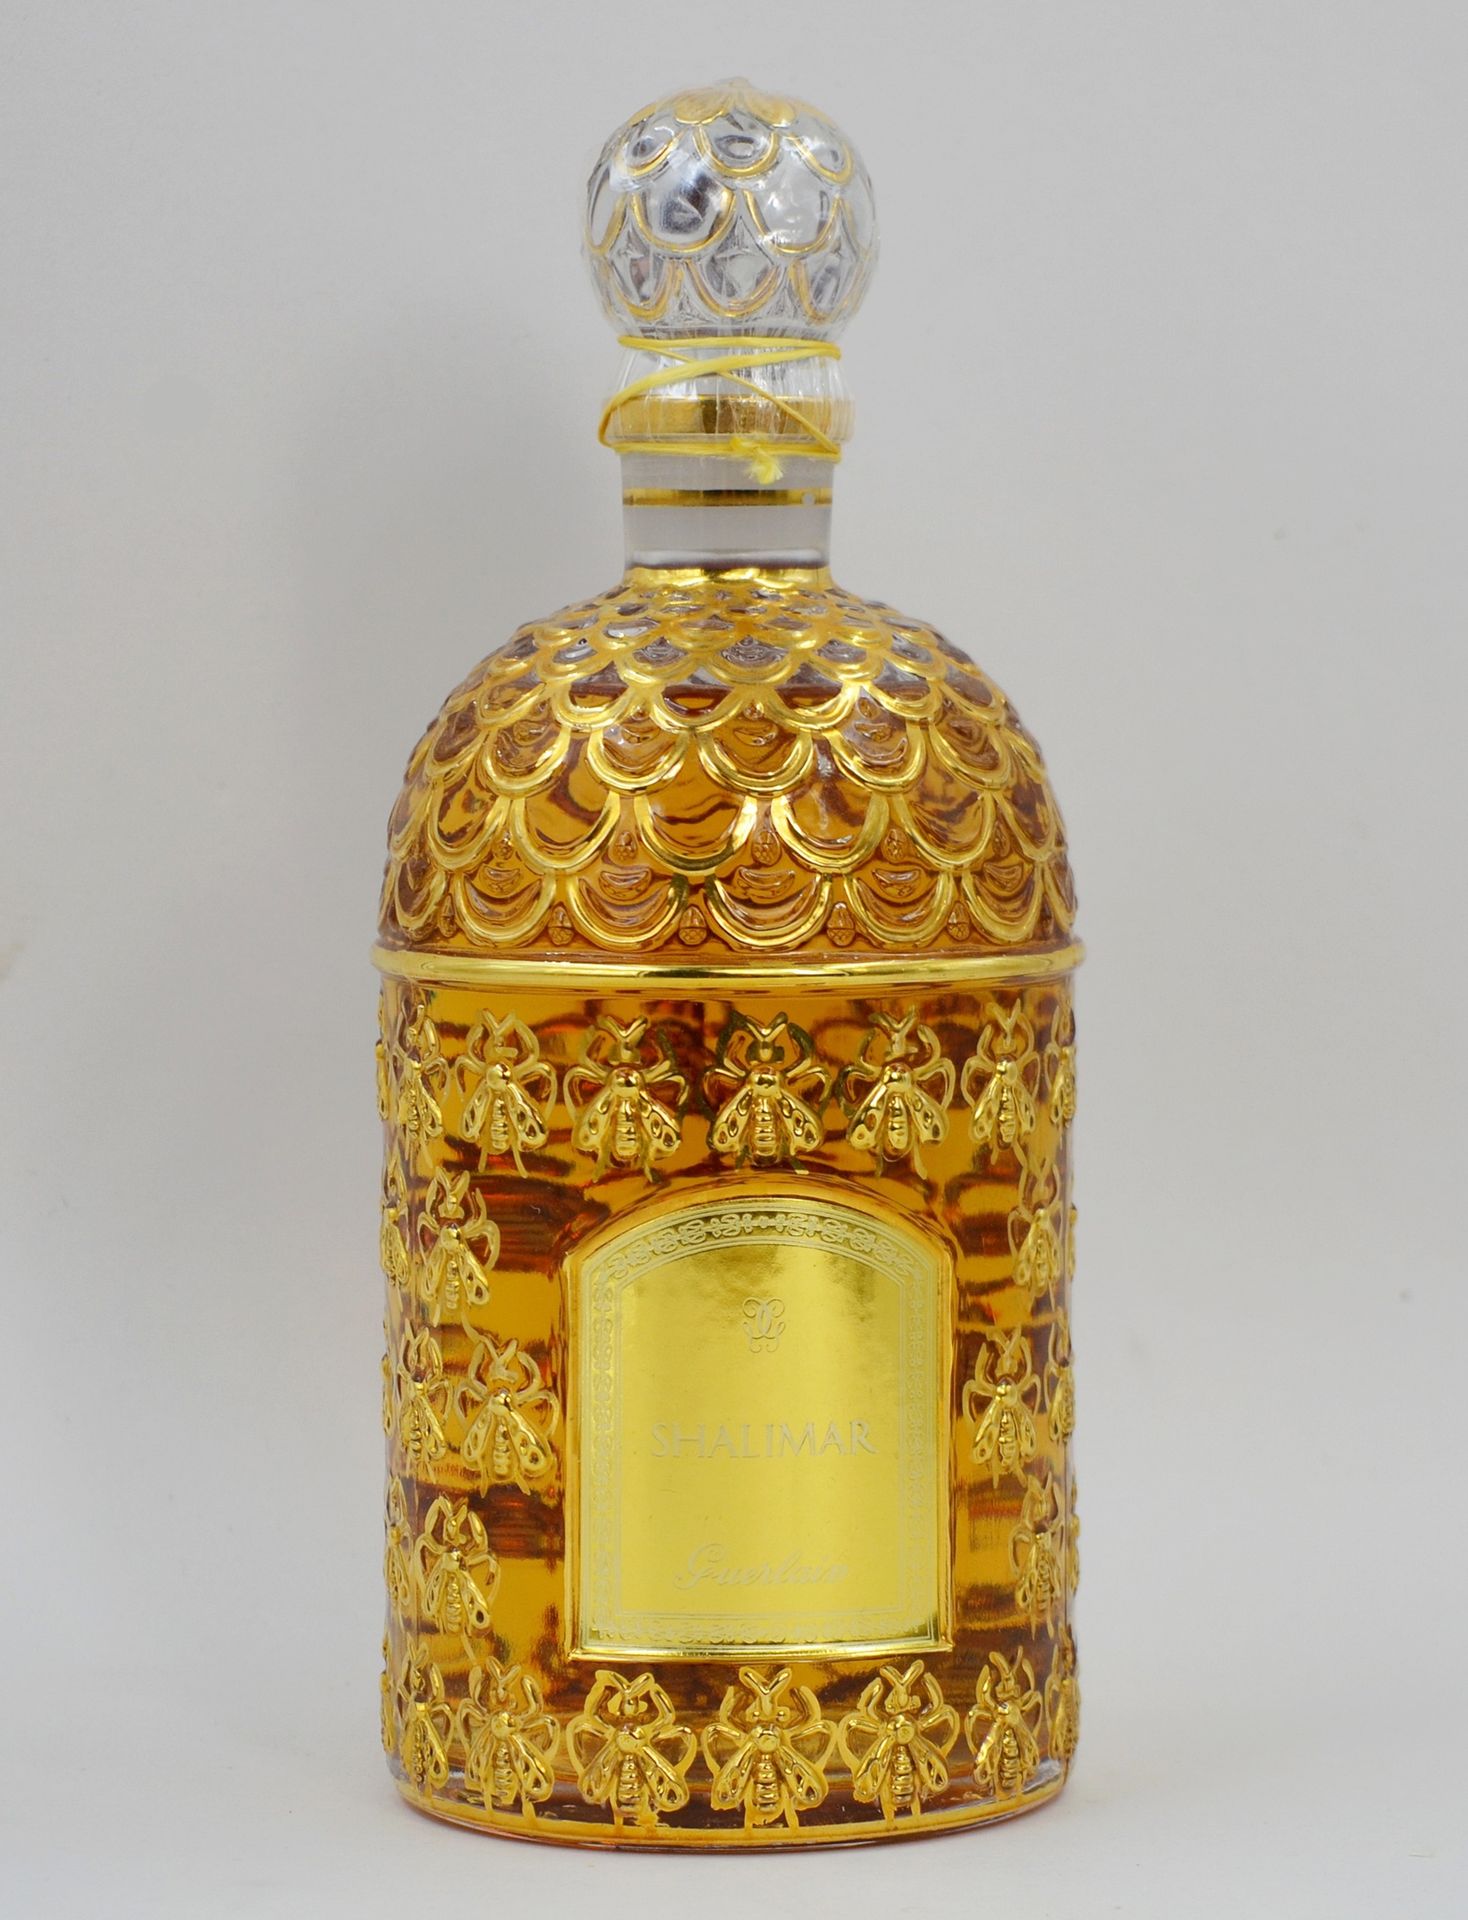 Null 古尔兰 "沙利玛尔

大玻璃瓶，"金蜜蜂 "模型。含有500毫升的花露水，密封。

高：20厘米